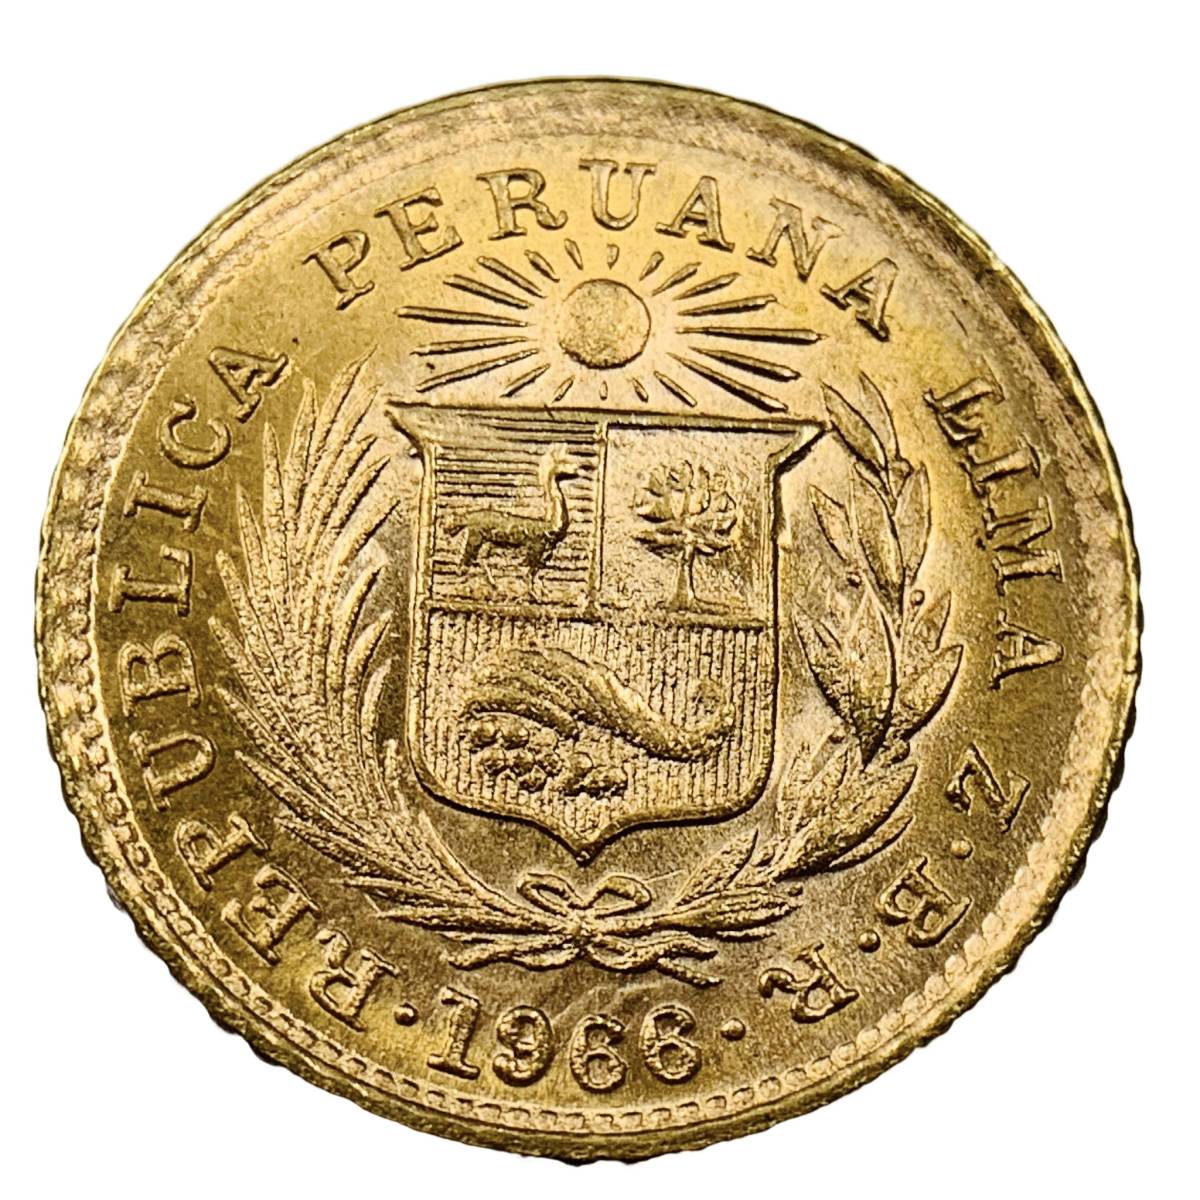  ペルー インディアン座像 金貨 1966年 1.45g 22金 イエローゴールド コレクション アンティークコイン Gold_画像2